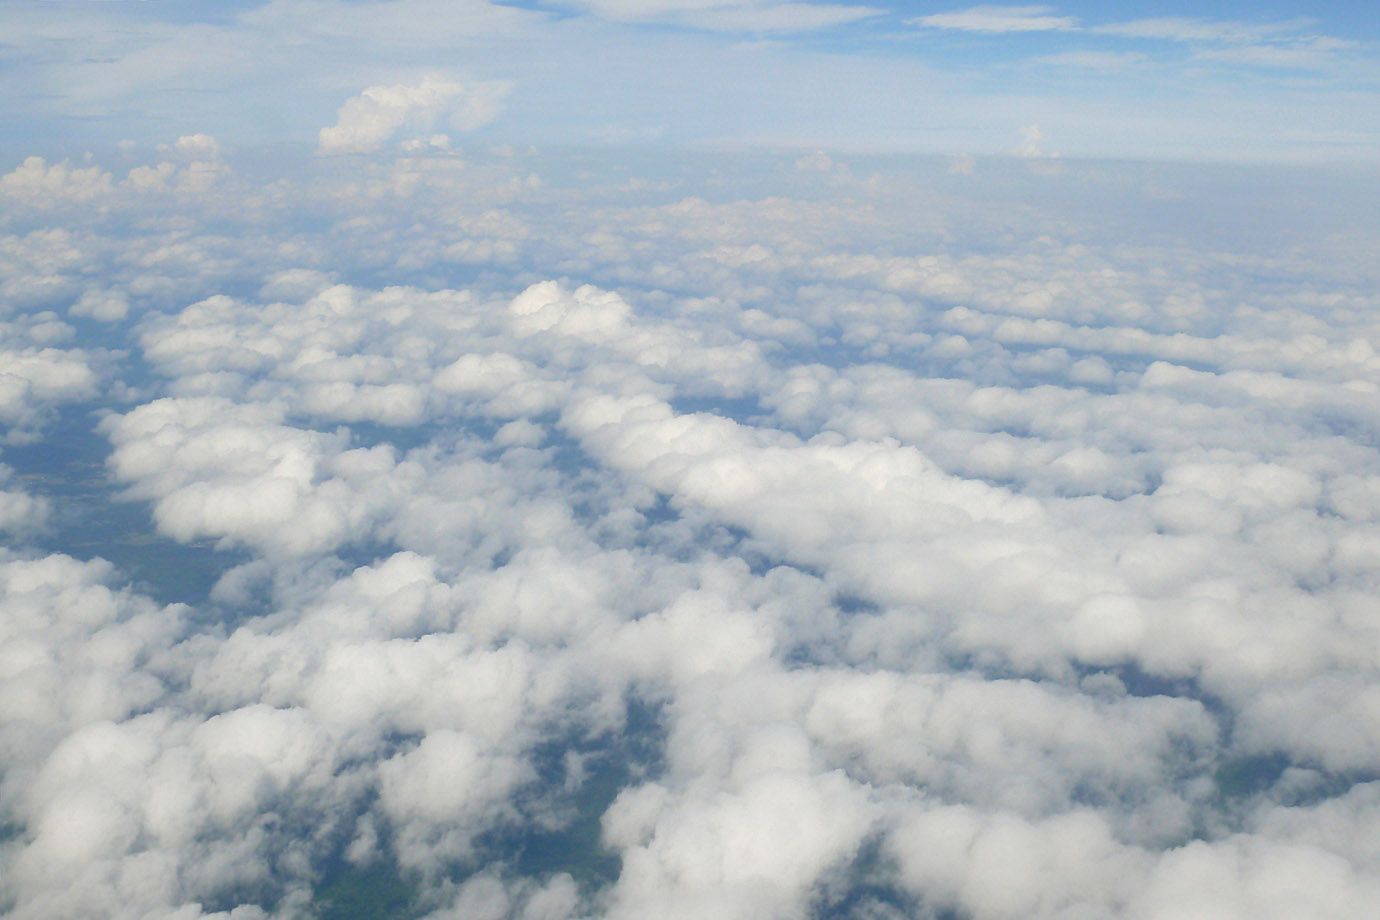 Schäfchenwolken von oben betrachtet